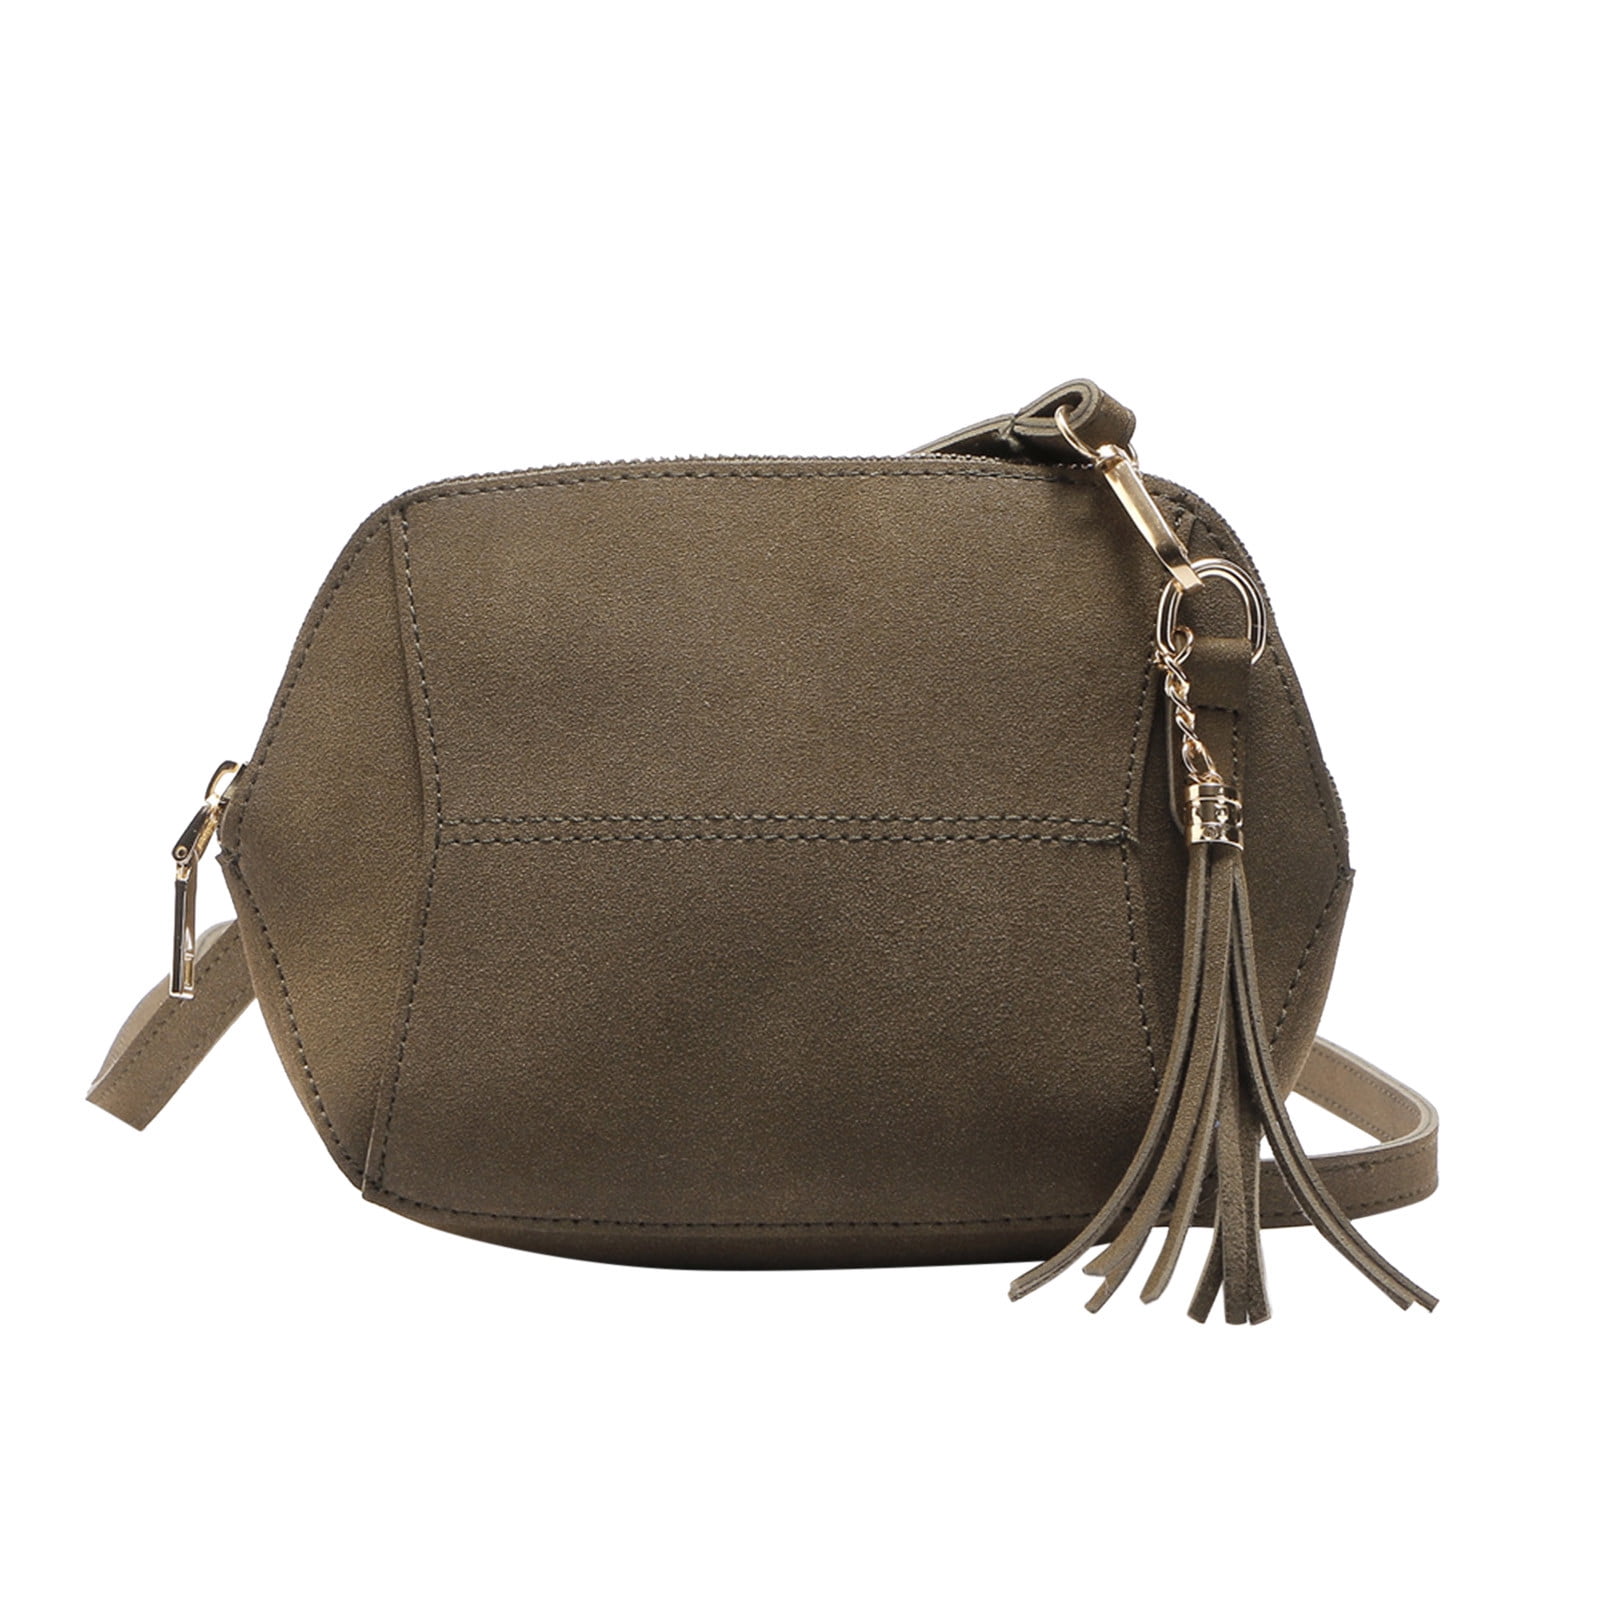 Crossbody / Messenger Bag Strap - Choose Leather Color - 50 Length, 3/4  Wide, #16 U-shape Hooks